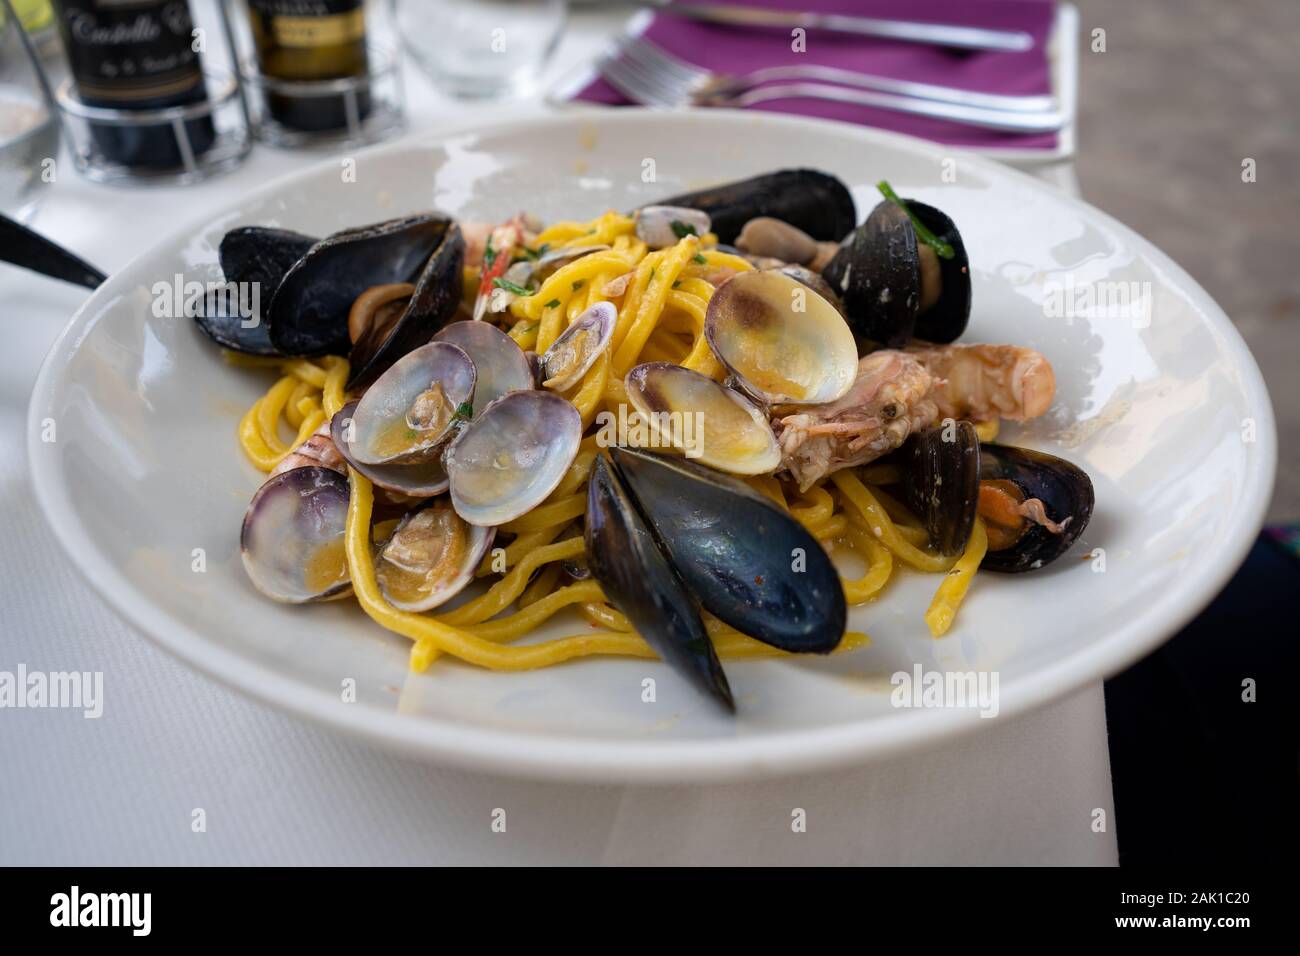 Italienische Pasta mit Fisch und Meeresfrüchte - Muscheln, Vongole und Garnelen. Nahaufnahme der Meeresfrüchte Pasta serviert im Italienischen Restaurant. Mediterrane Küche. Stockfoto